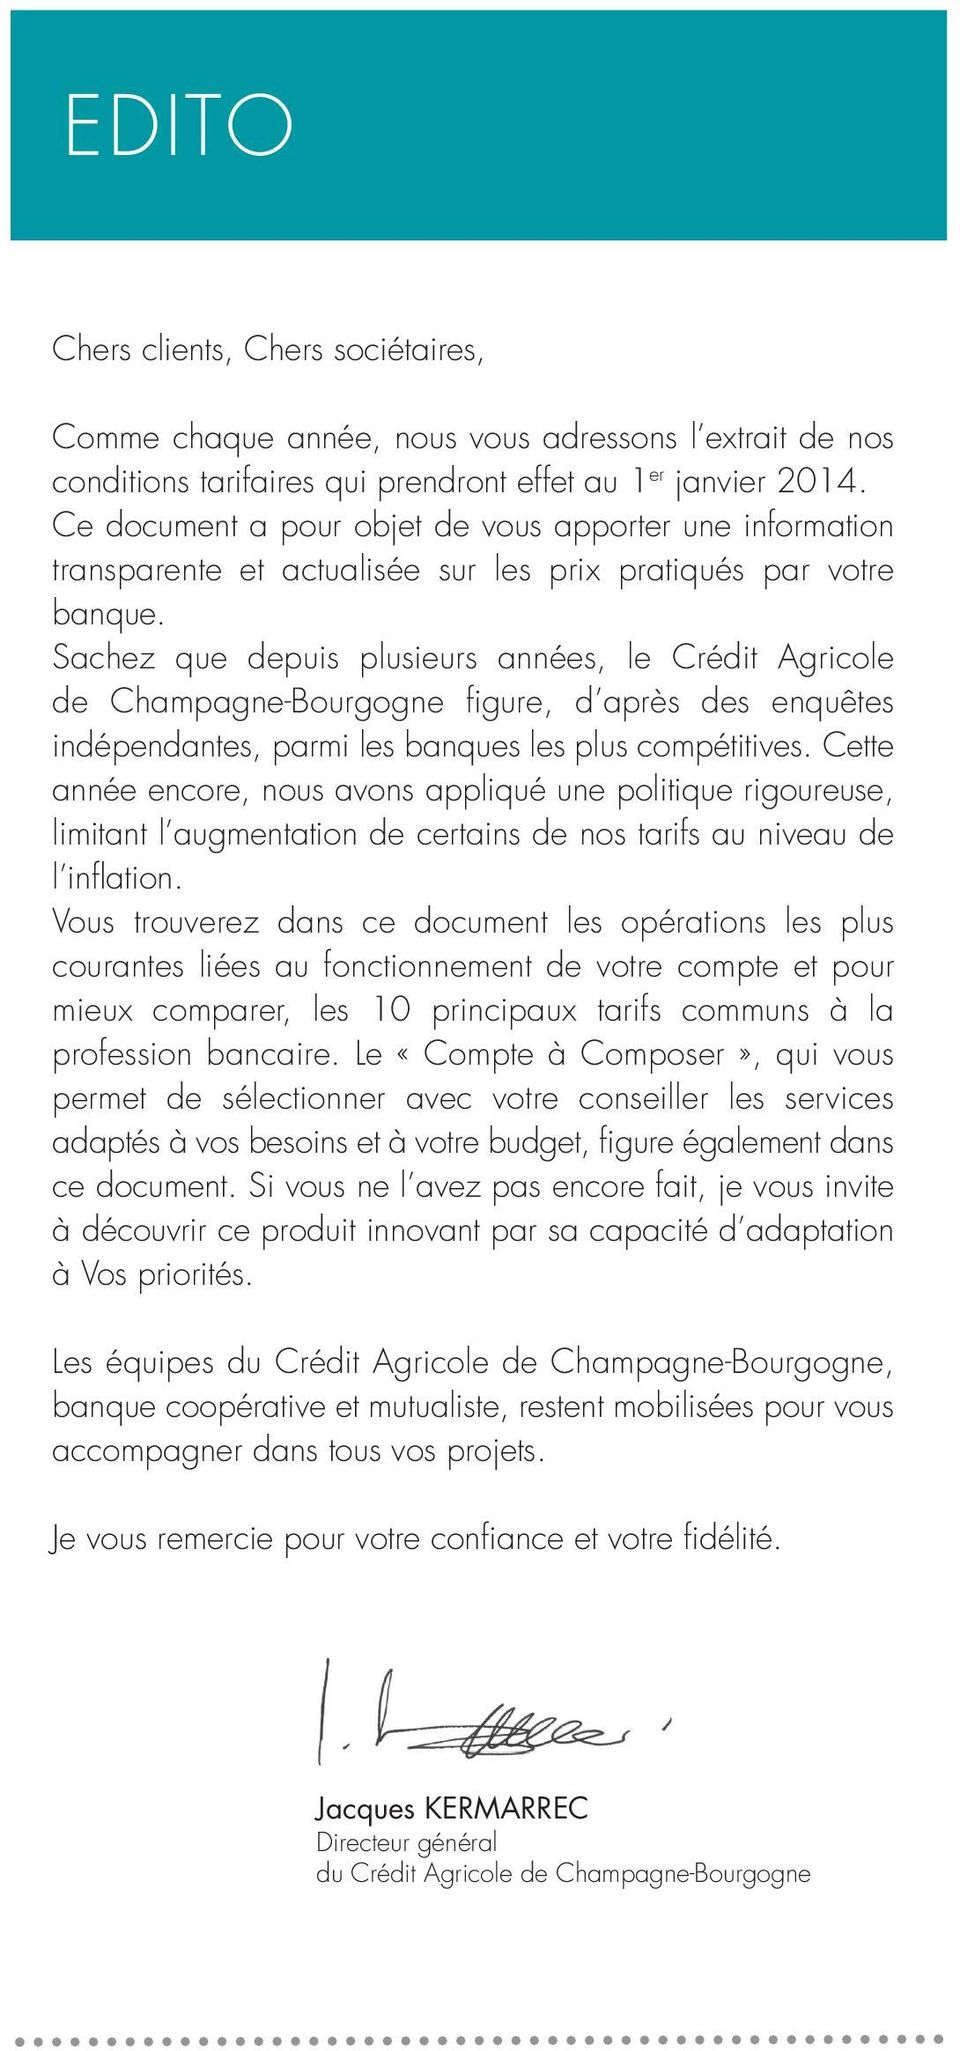 Sachez que depuis plusieurs années, le Crédit Agricole de Champagne-Bourgogne figure, d après des enquêtes indépendantes, parmi les banques les plus compétitives.